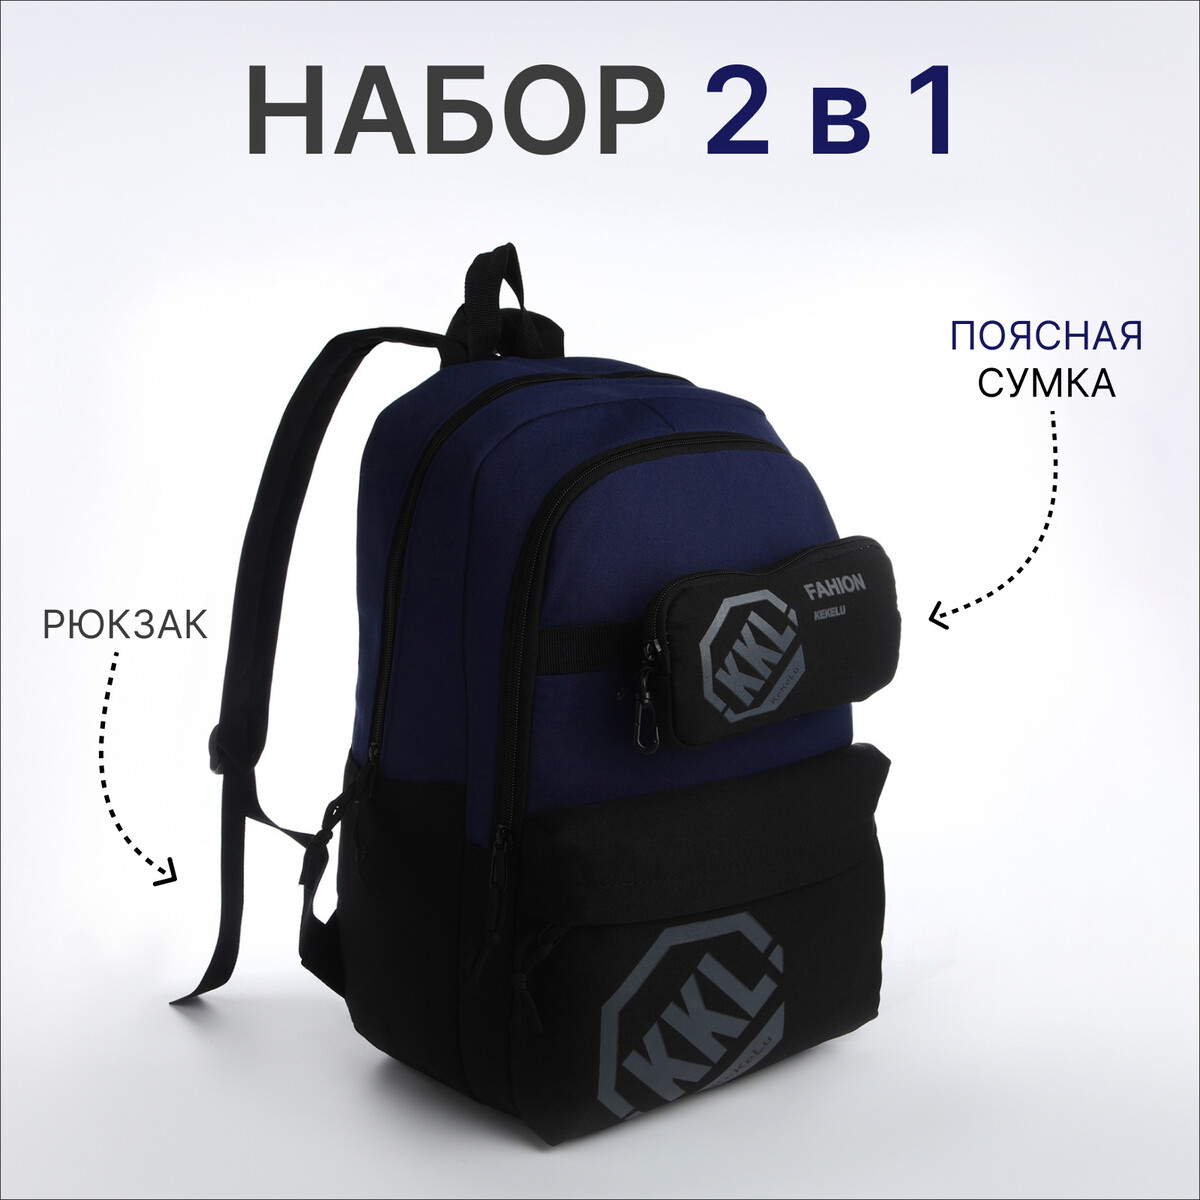 Рюкзак молодежный из текстиля на молнии, 3 кармана, сумка, держатель для чемодана, цвет черный/синий рюкзак молодежный из текстиля на молнии 3 кармана сумка держатель для чемодана